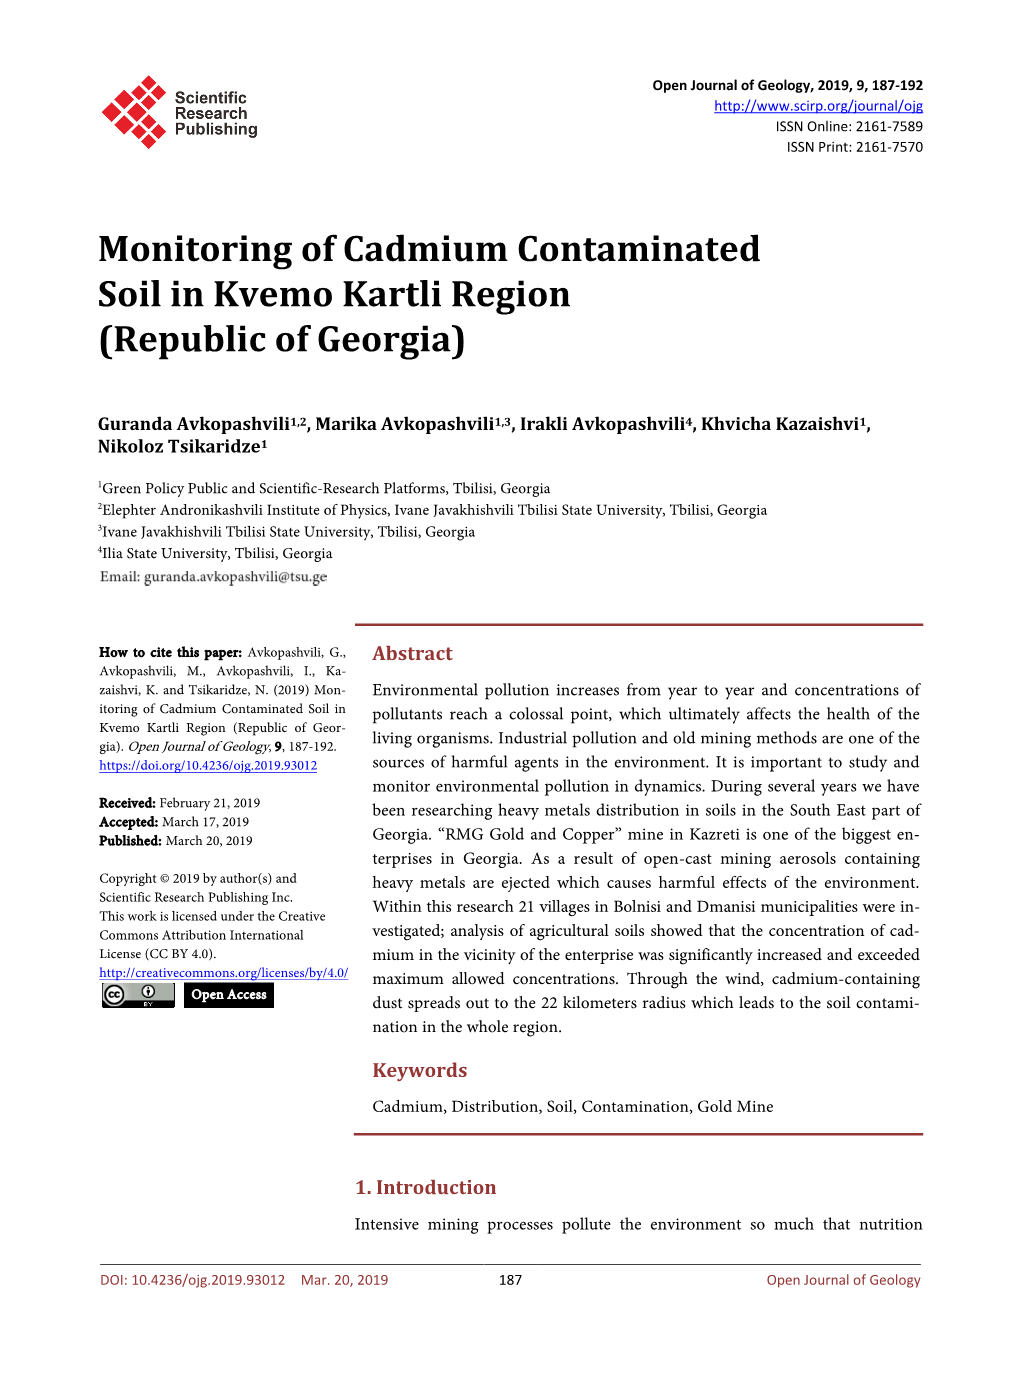 Monitoring of Cadmium Contaminated Soil in Kvemo Kartli Region (Republic of Georgia)